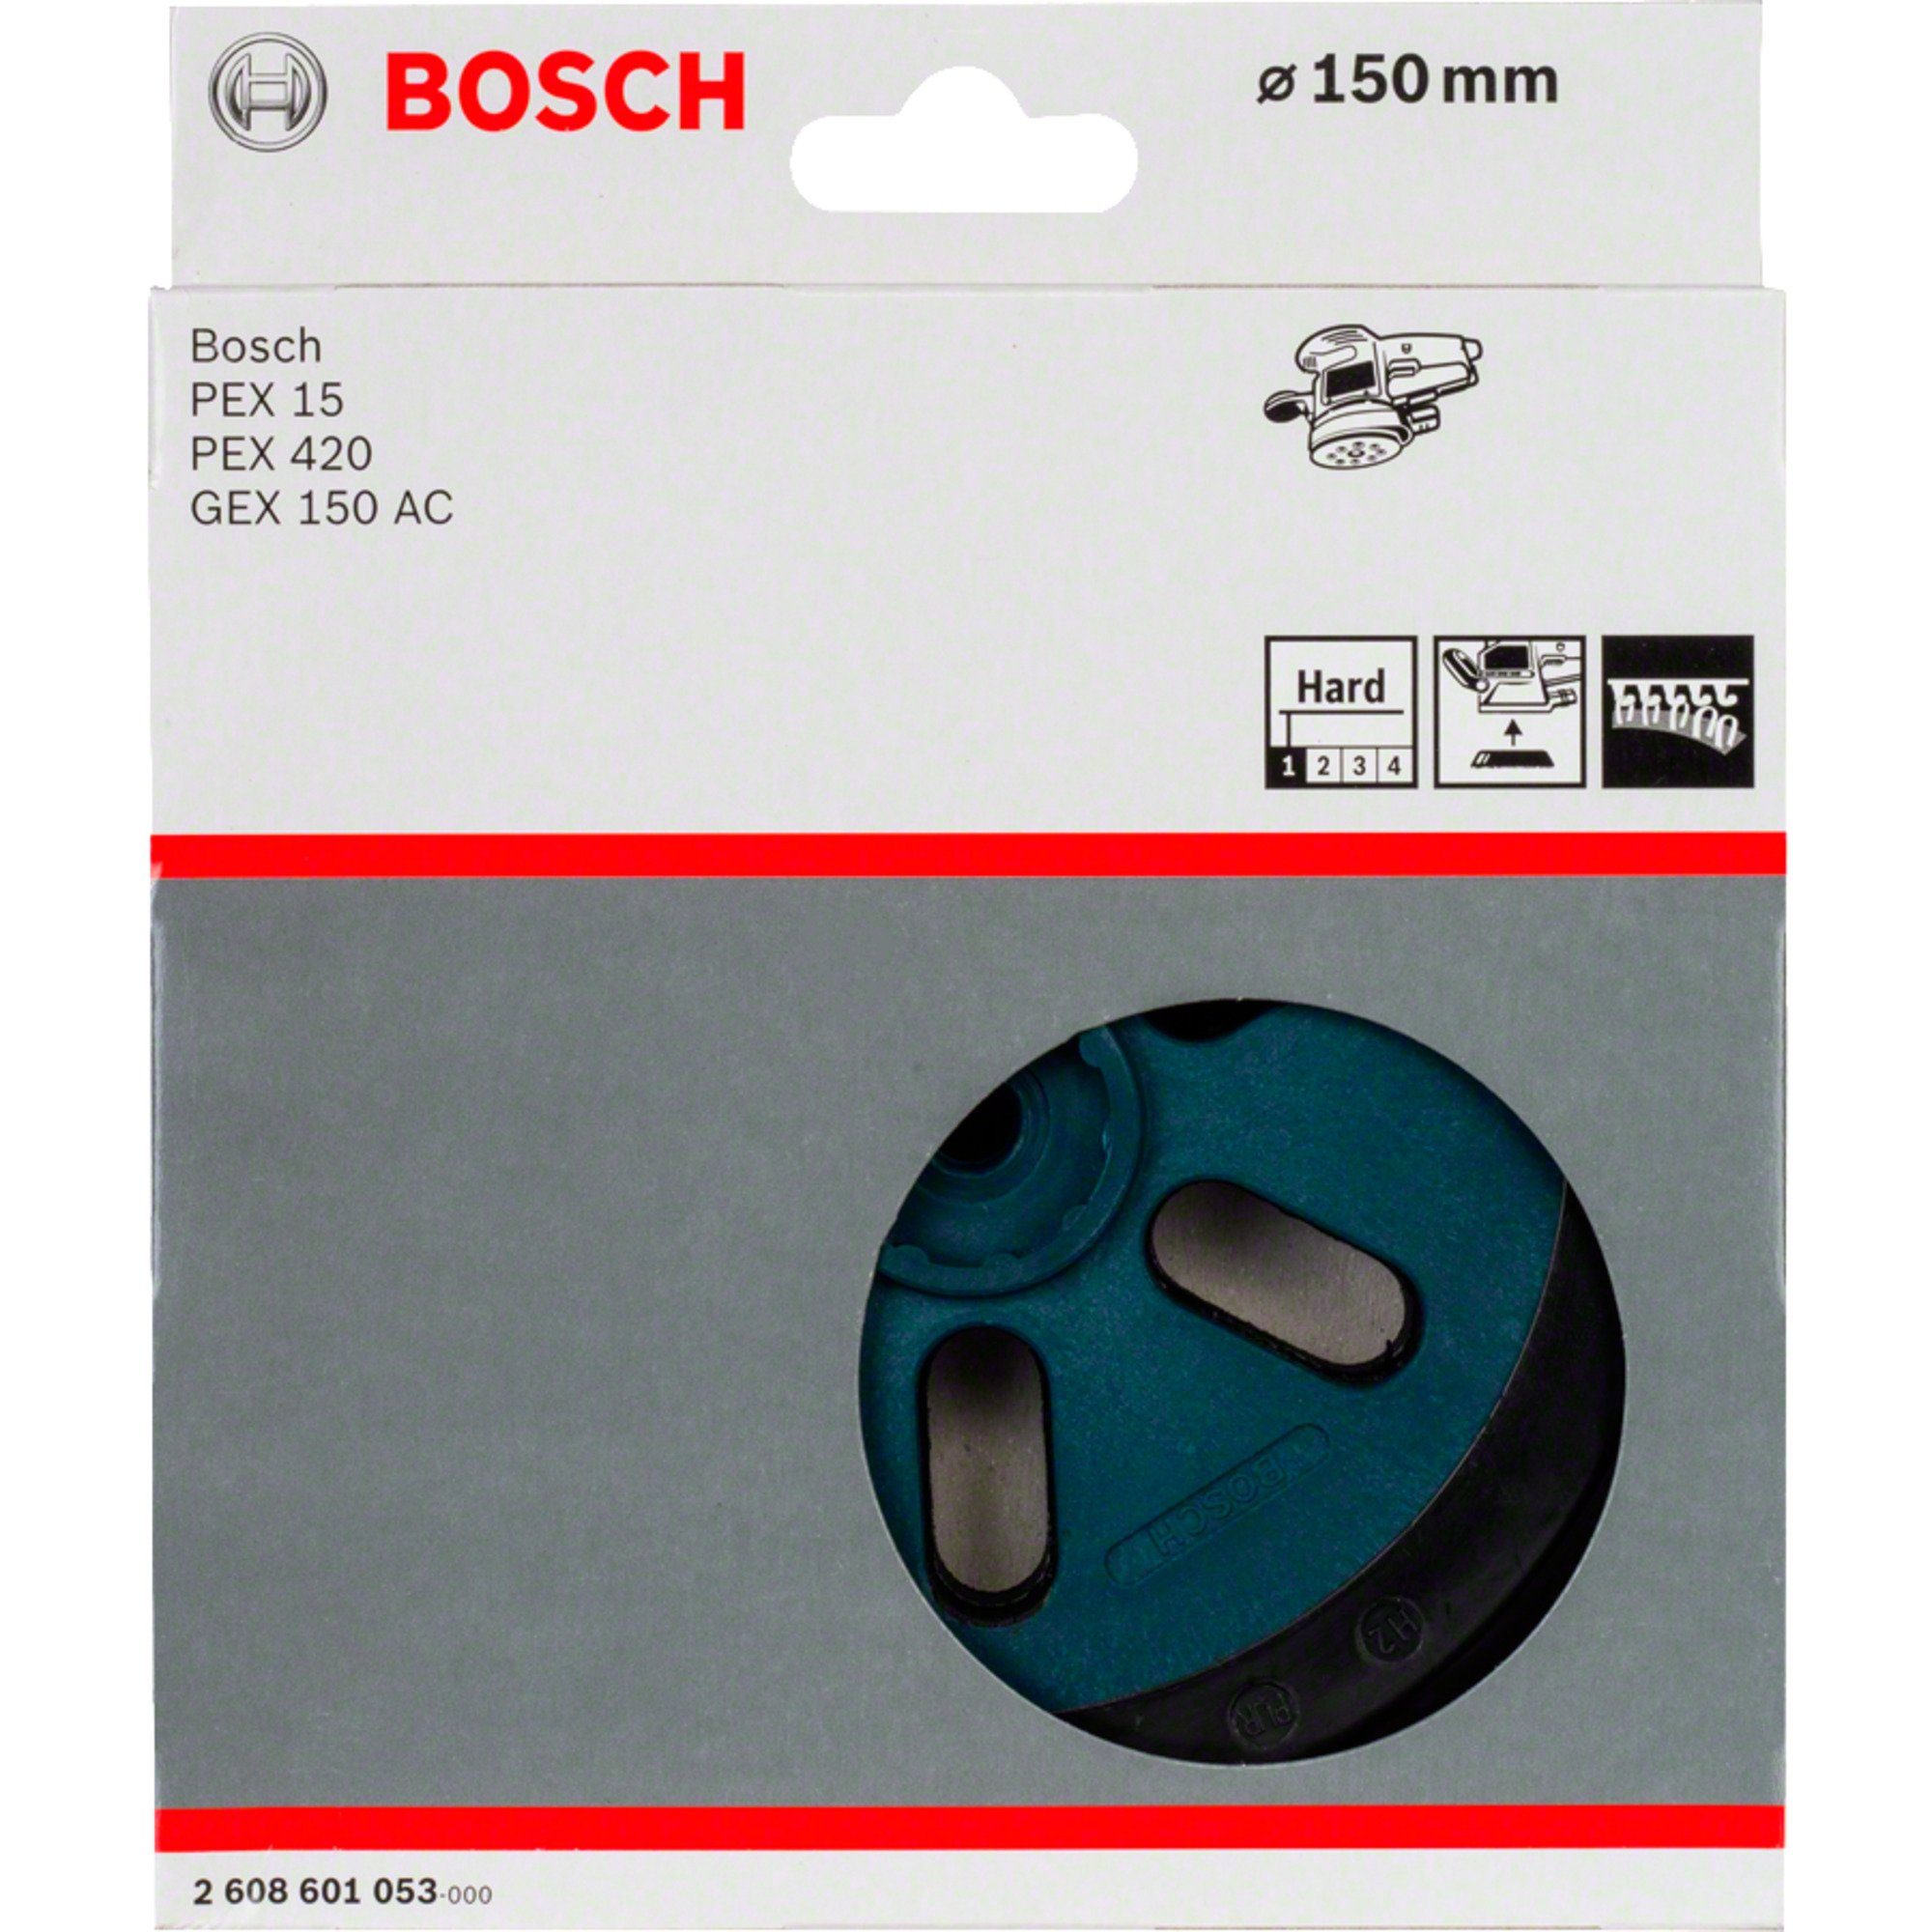 BOSCH Schleifscheibe Bosch Professional Schleifteller hart, Ø 150mm